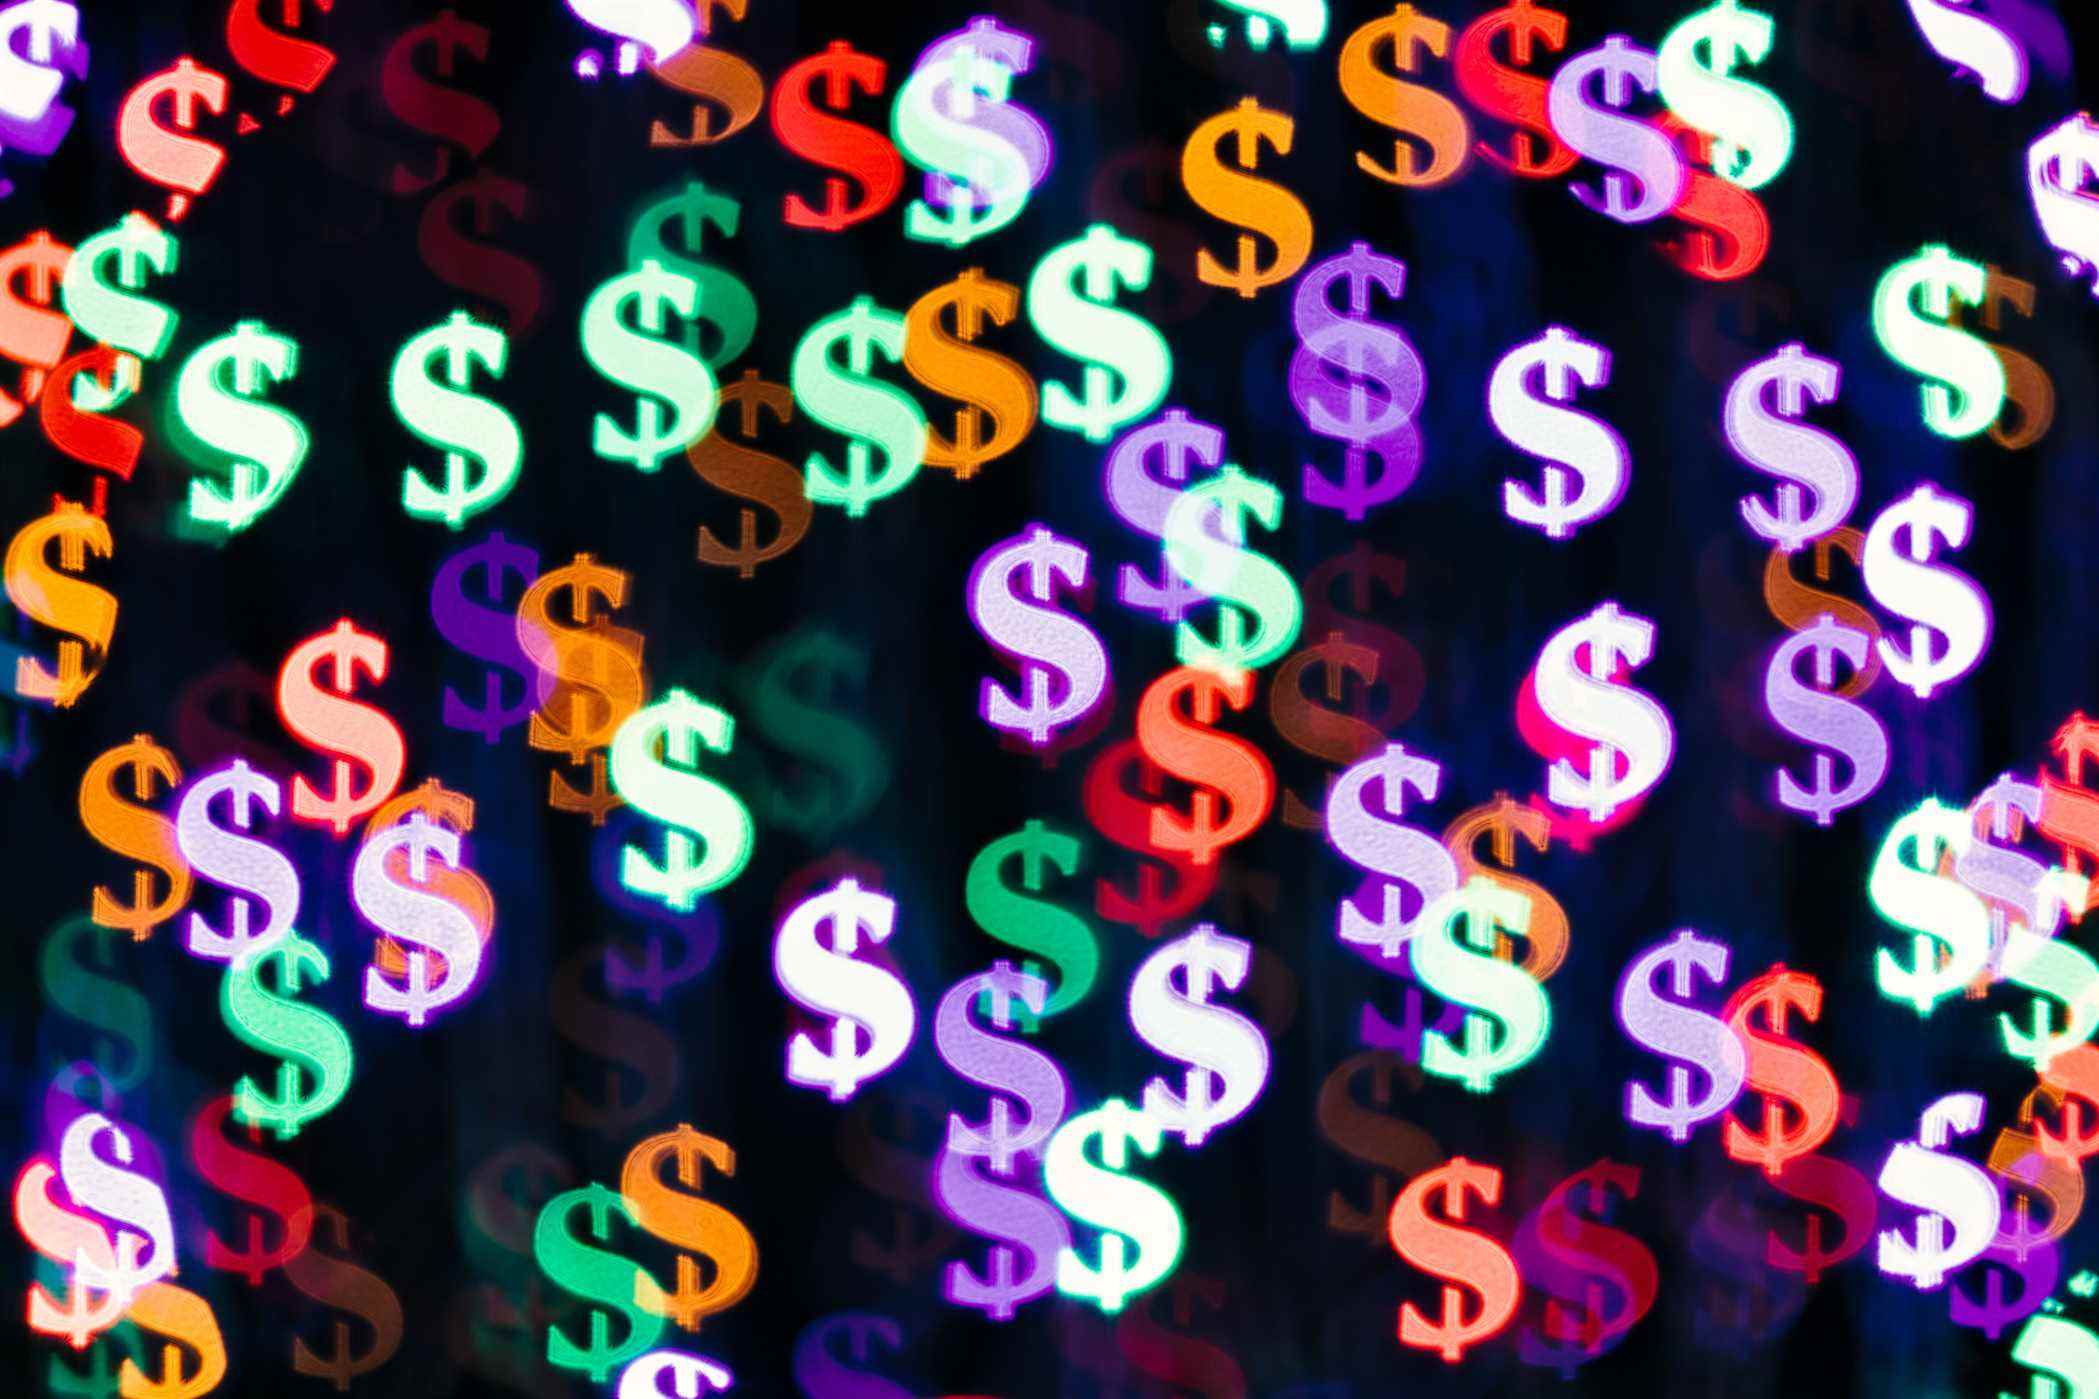 Multicolore Bling Bling Dollar Sign forme Bokeh toile de fond sur fond sombre, Finance Concept.